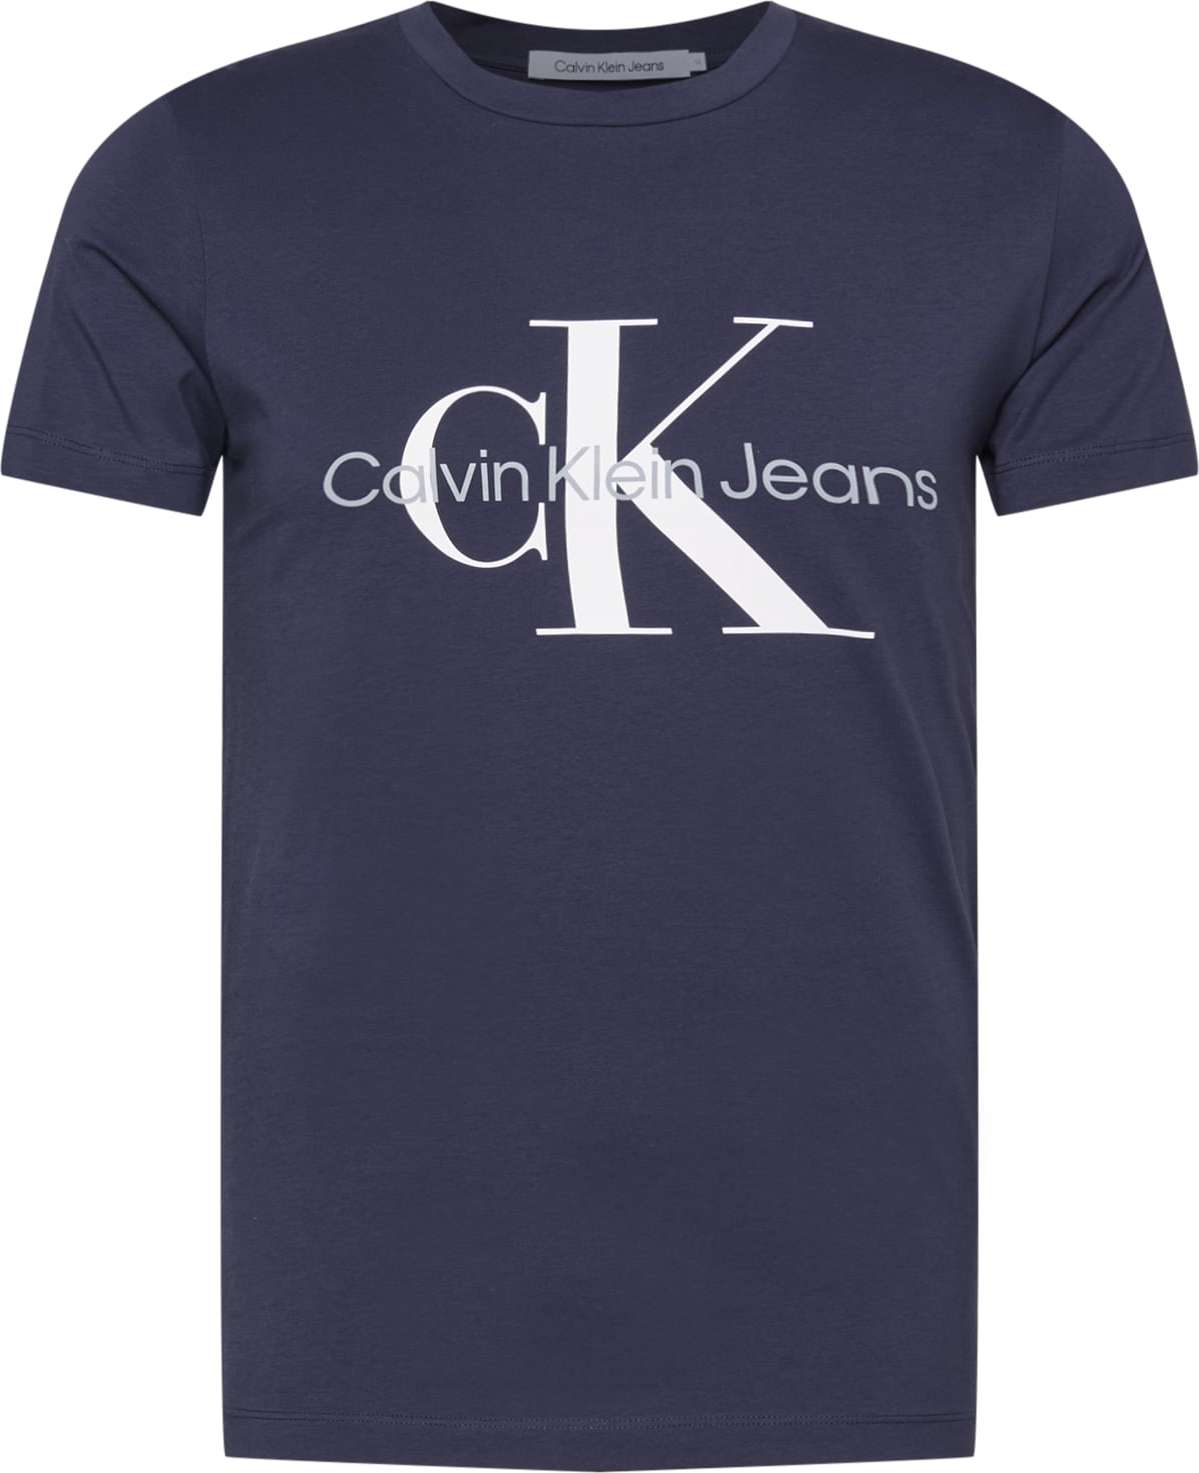 Tričko Calvin Klein Jeans marine modrá / šedá / bílá